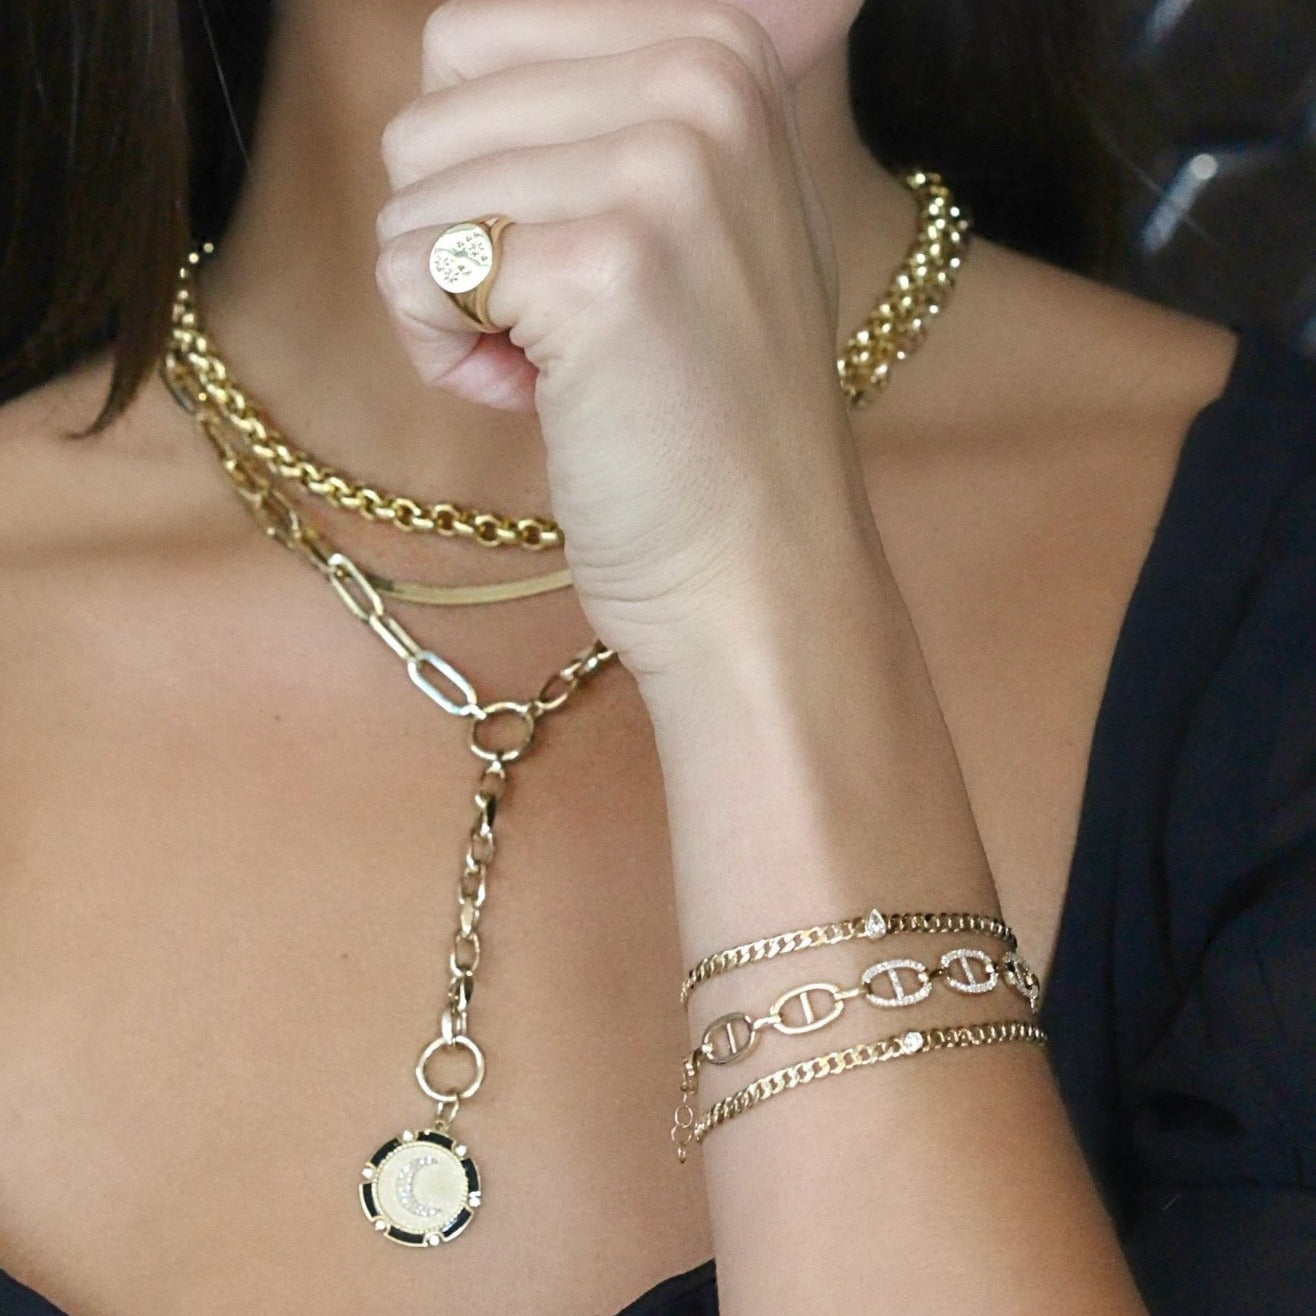 14K Gold Bezel Pear Shaped Diamond Cuban Link Bracelet - Bracelets - Izakov Diamonds + Fine Jewelry